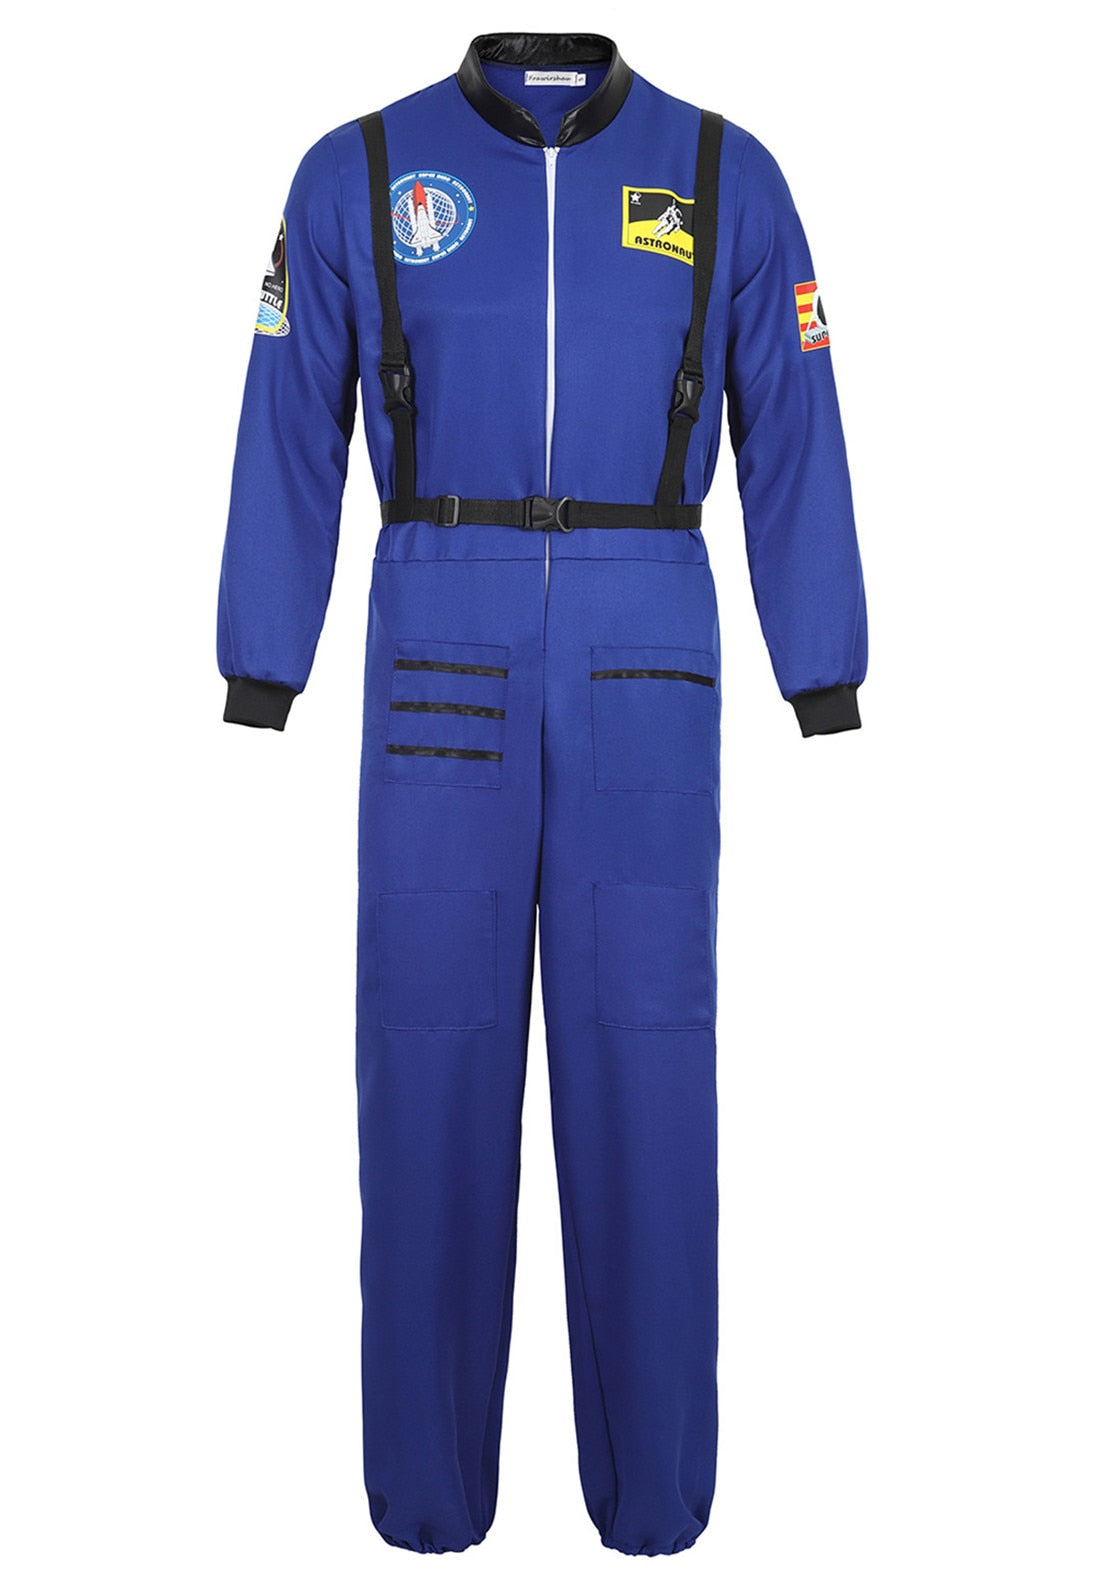 Astronaut Space Suit - 3 colours